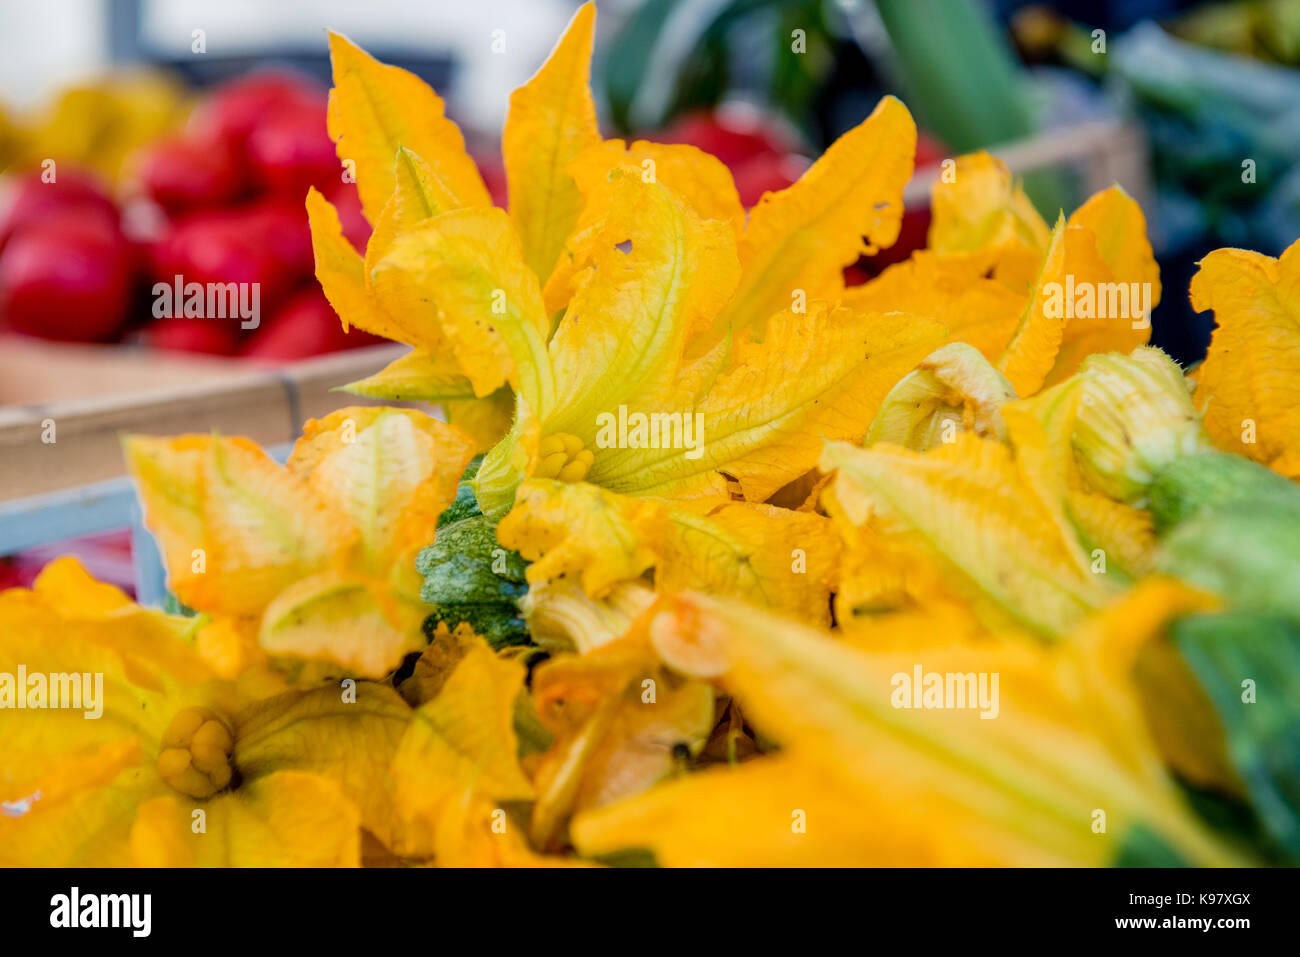 Aprire giallo fiore di zucchine mazzetto fuoco selettivo dettaglio stallo del mercato in background Foto Stock